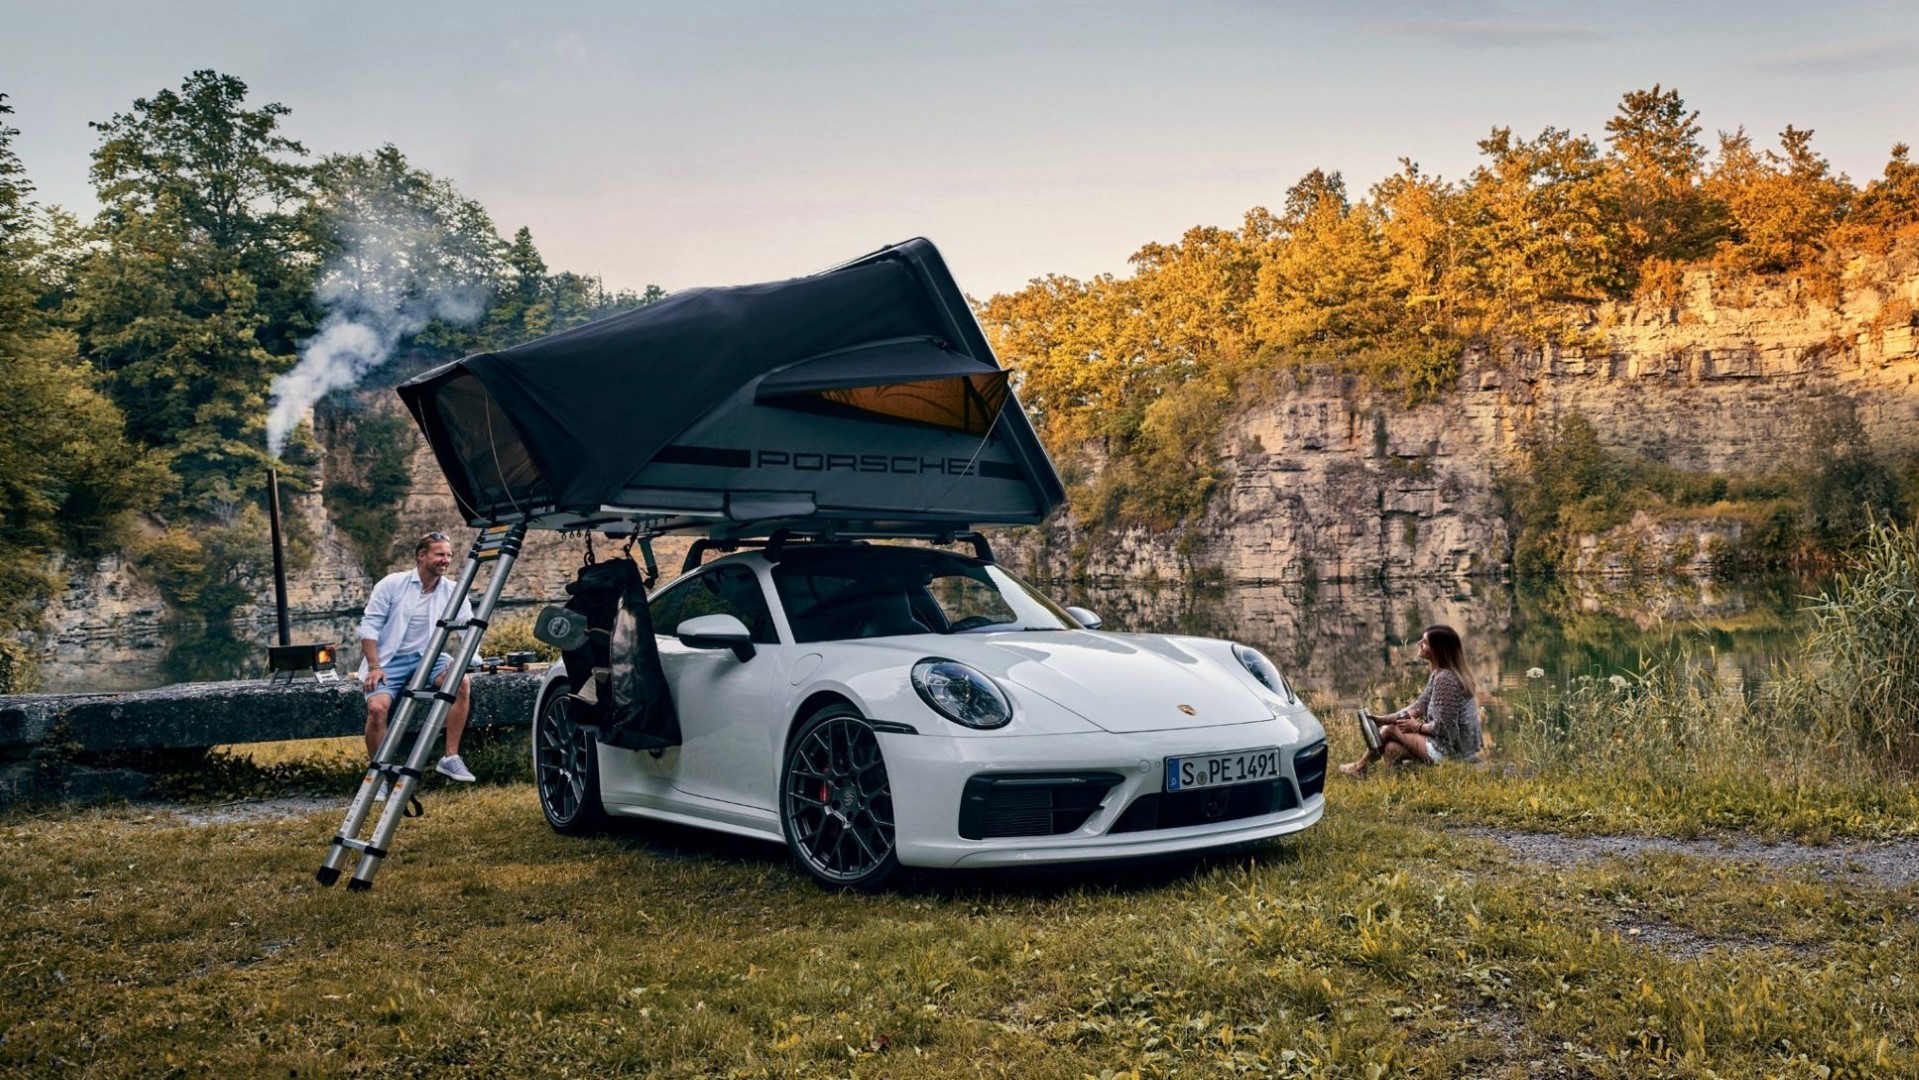 Η σκήνη οροφής της Porsche που θα λατρέψουν οι campers!